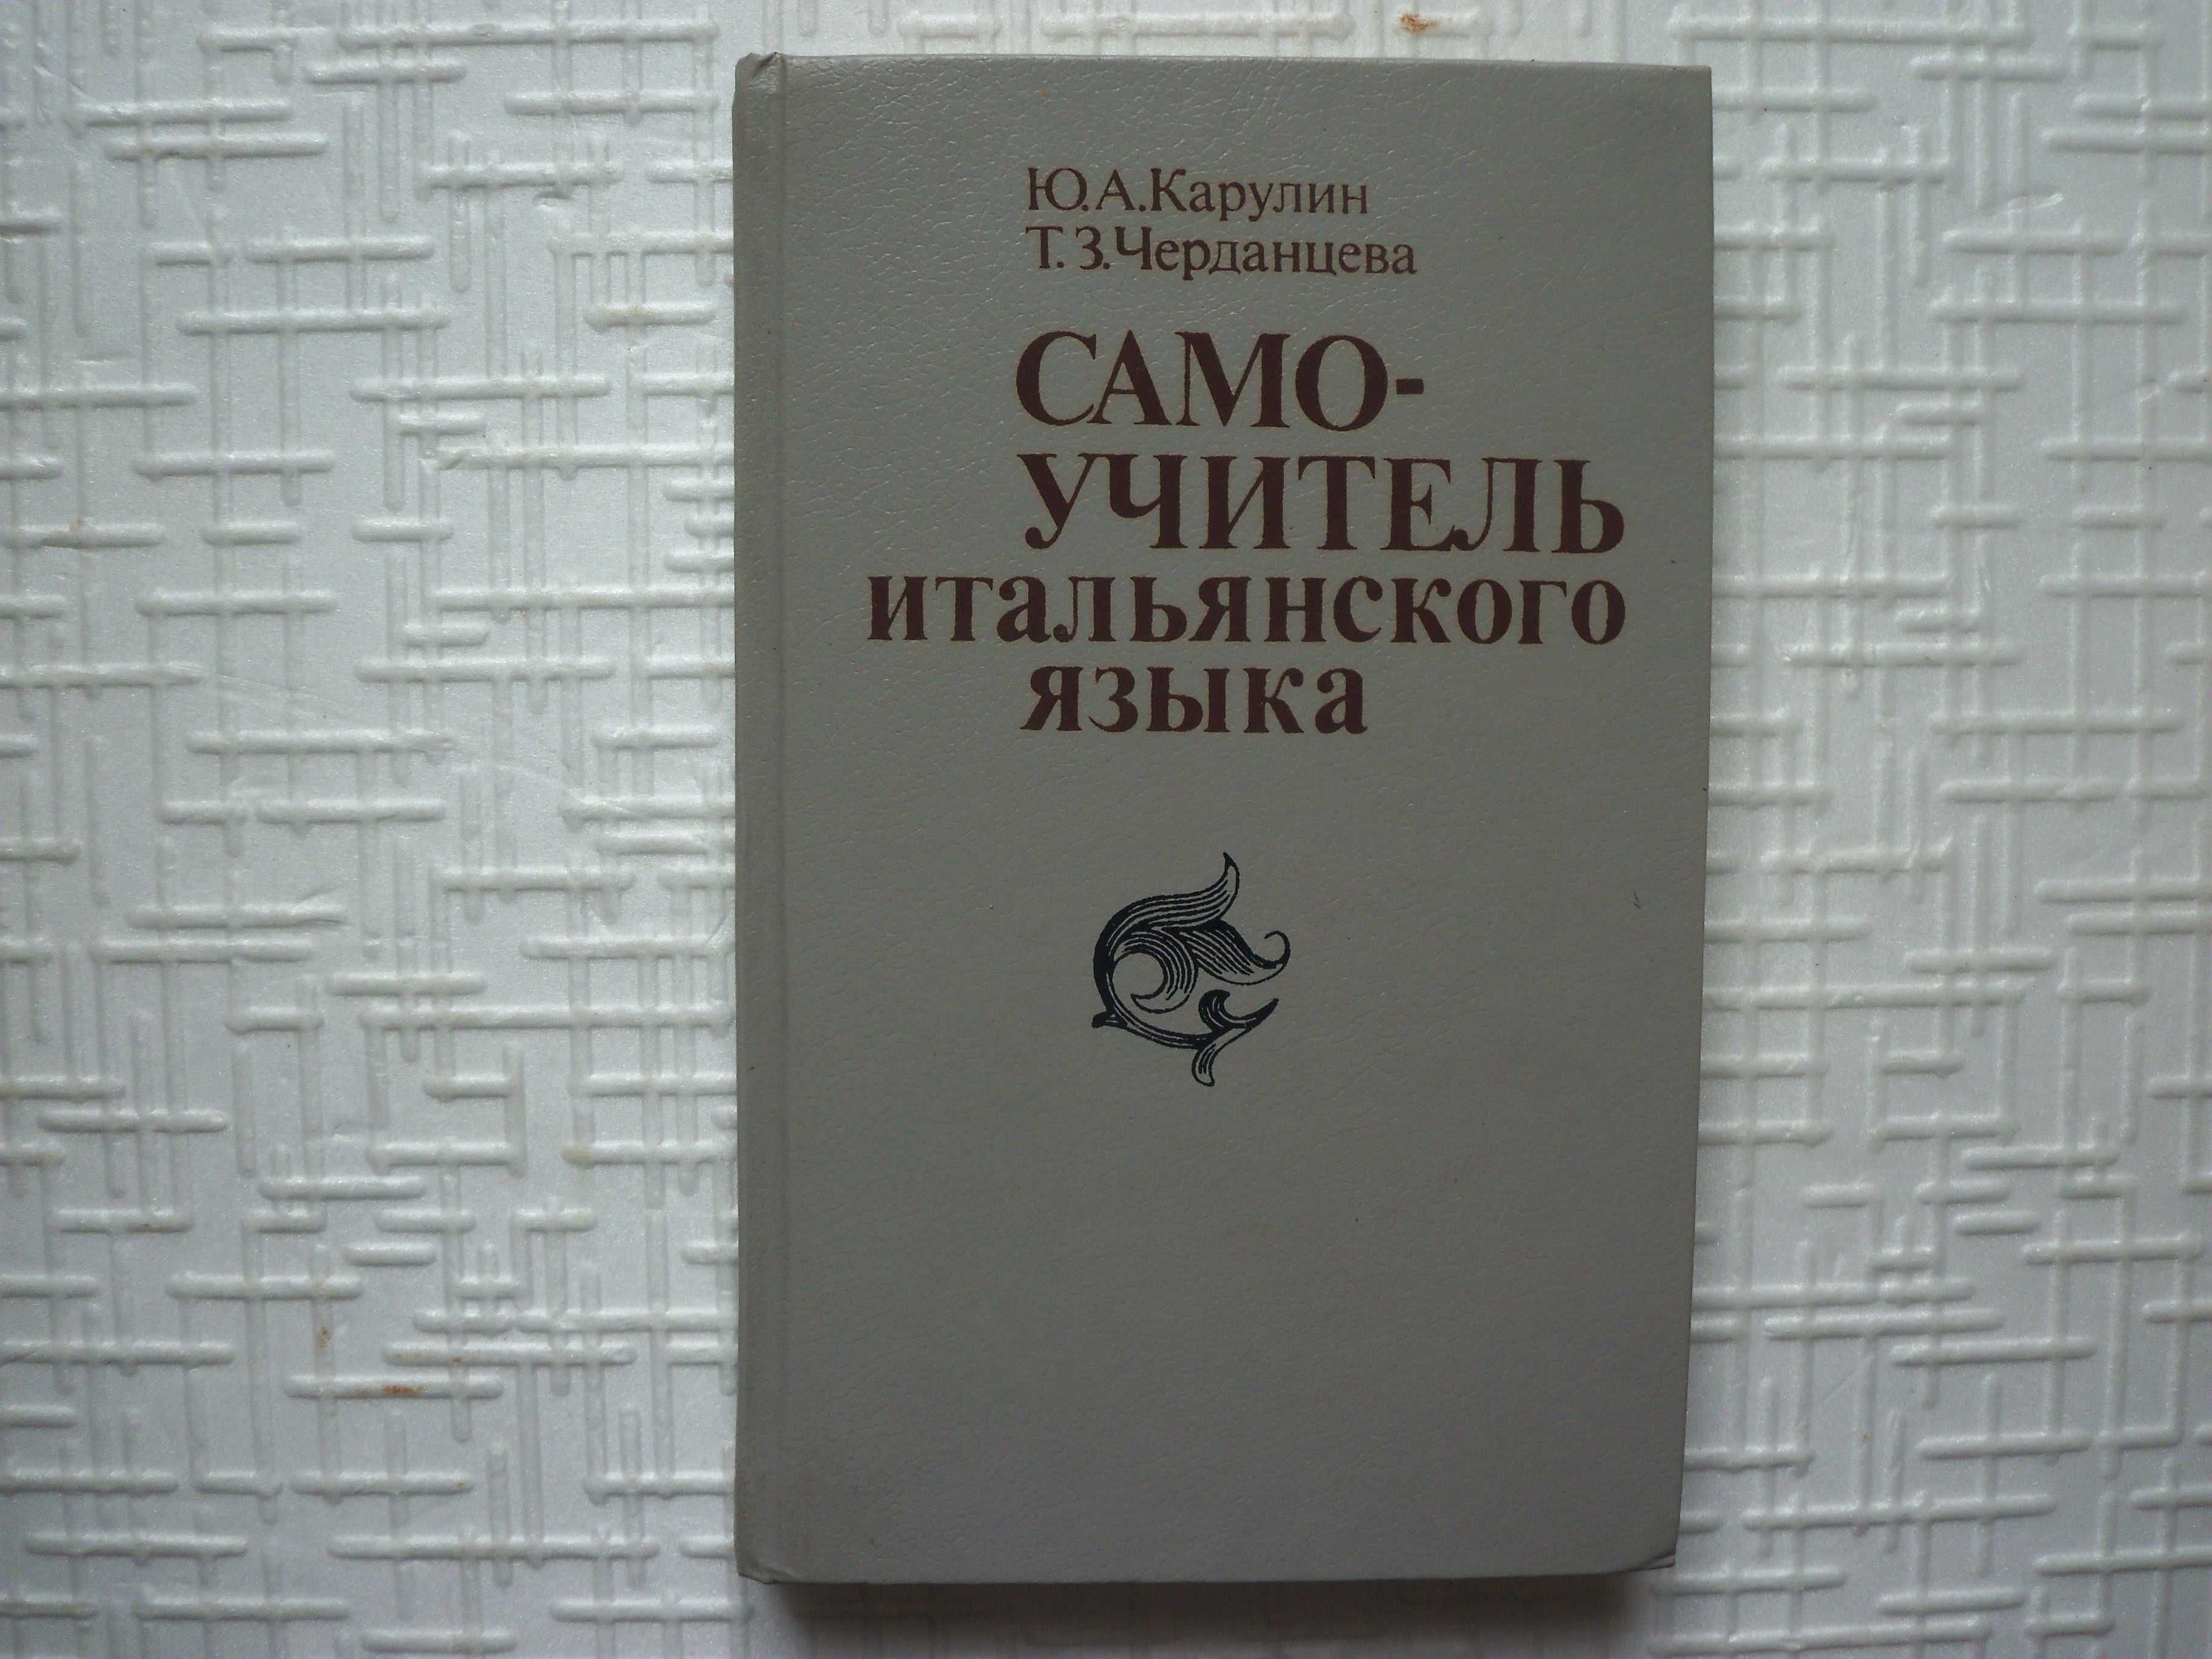 Лепинг А.А. Страховой Н.П. Немецко- русский словарь.